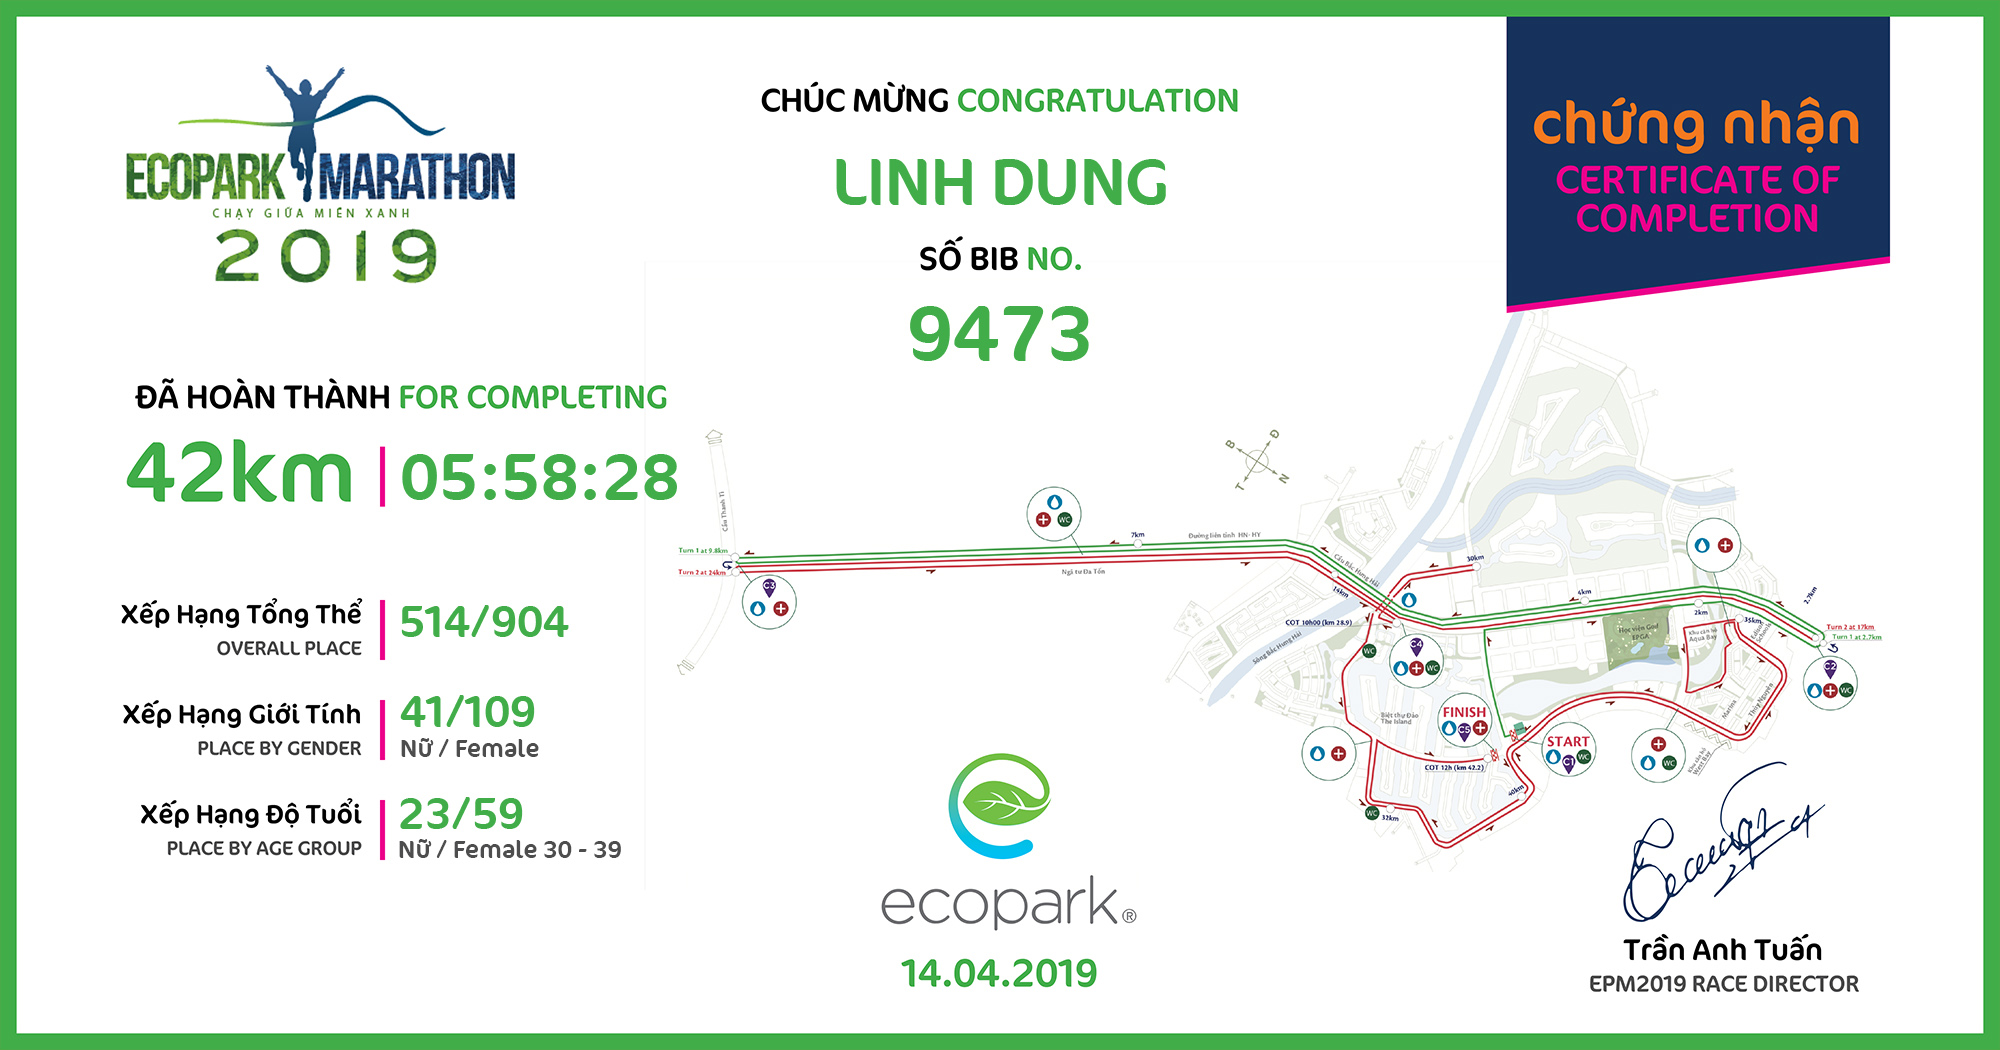 9473 - Linh Dung